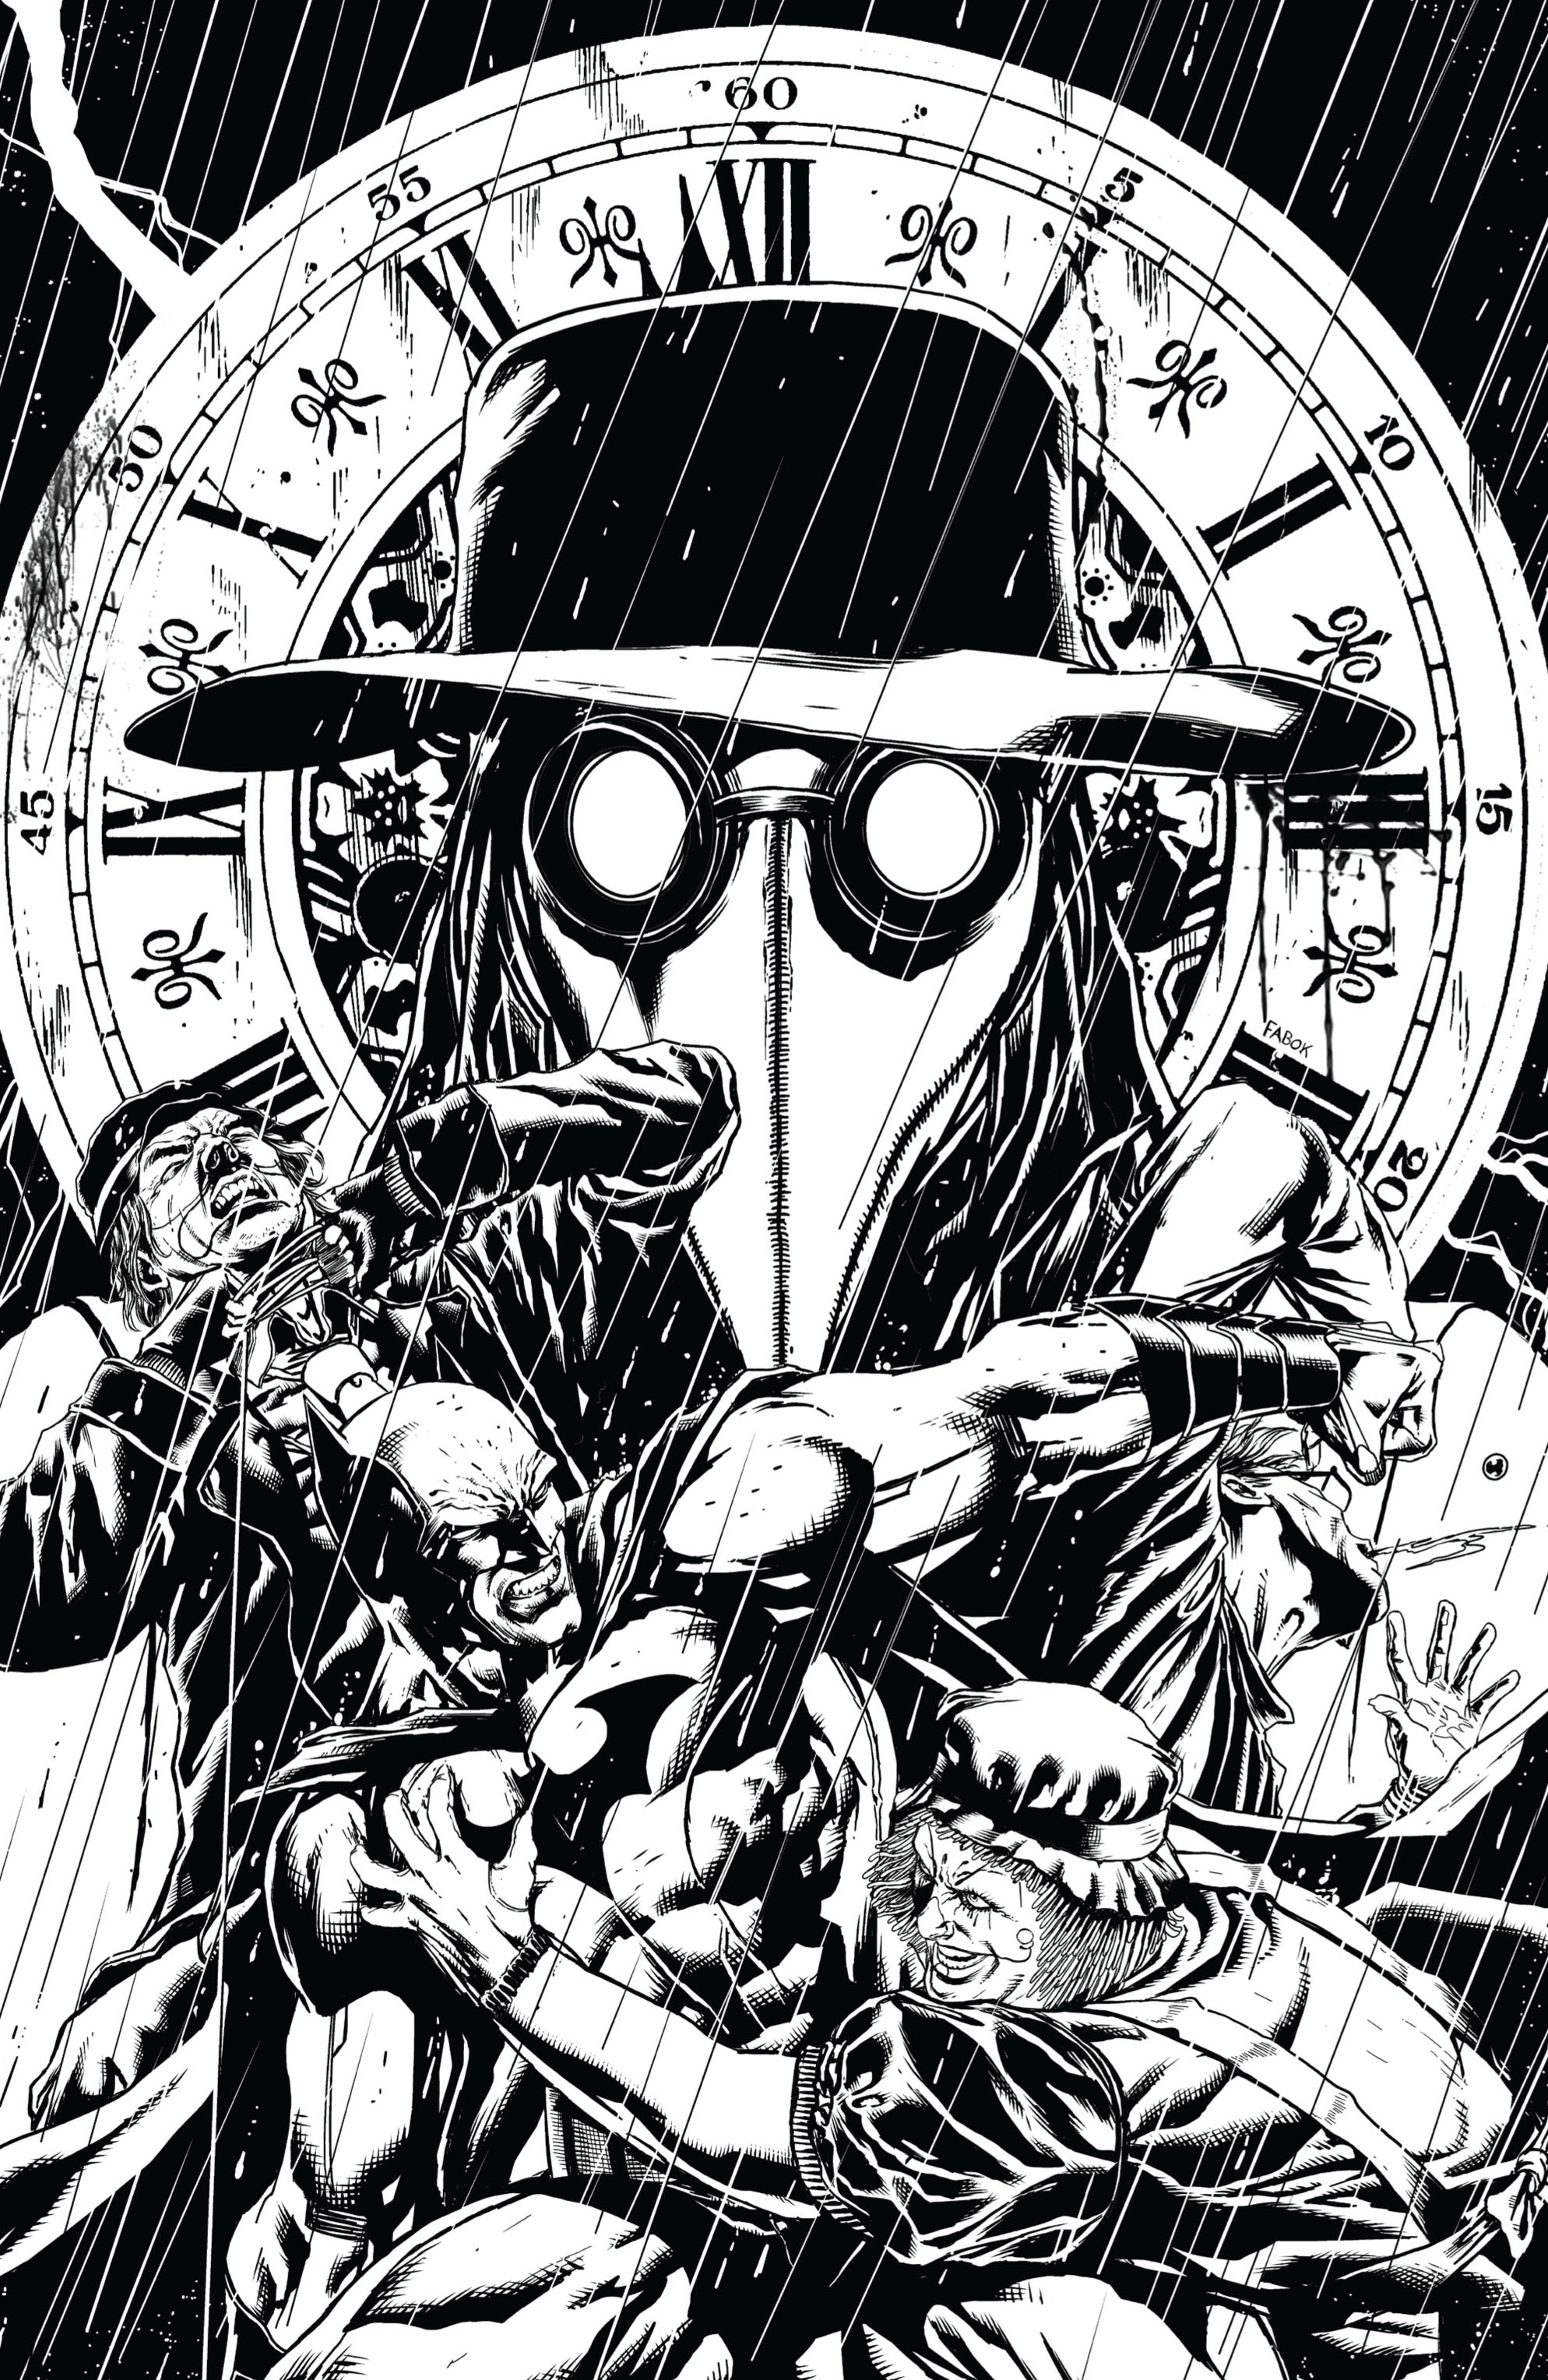 Read online Batman: Detective Comics comic -  Issue # TPB 3 - 122